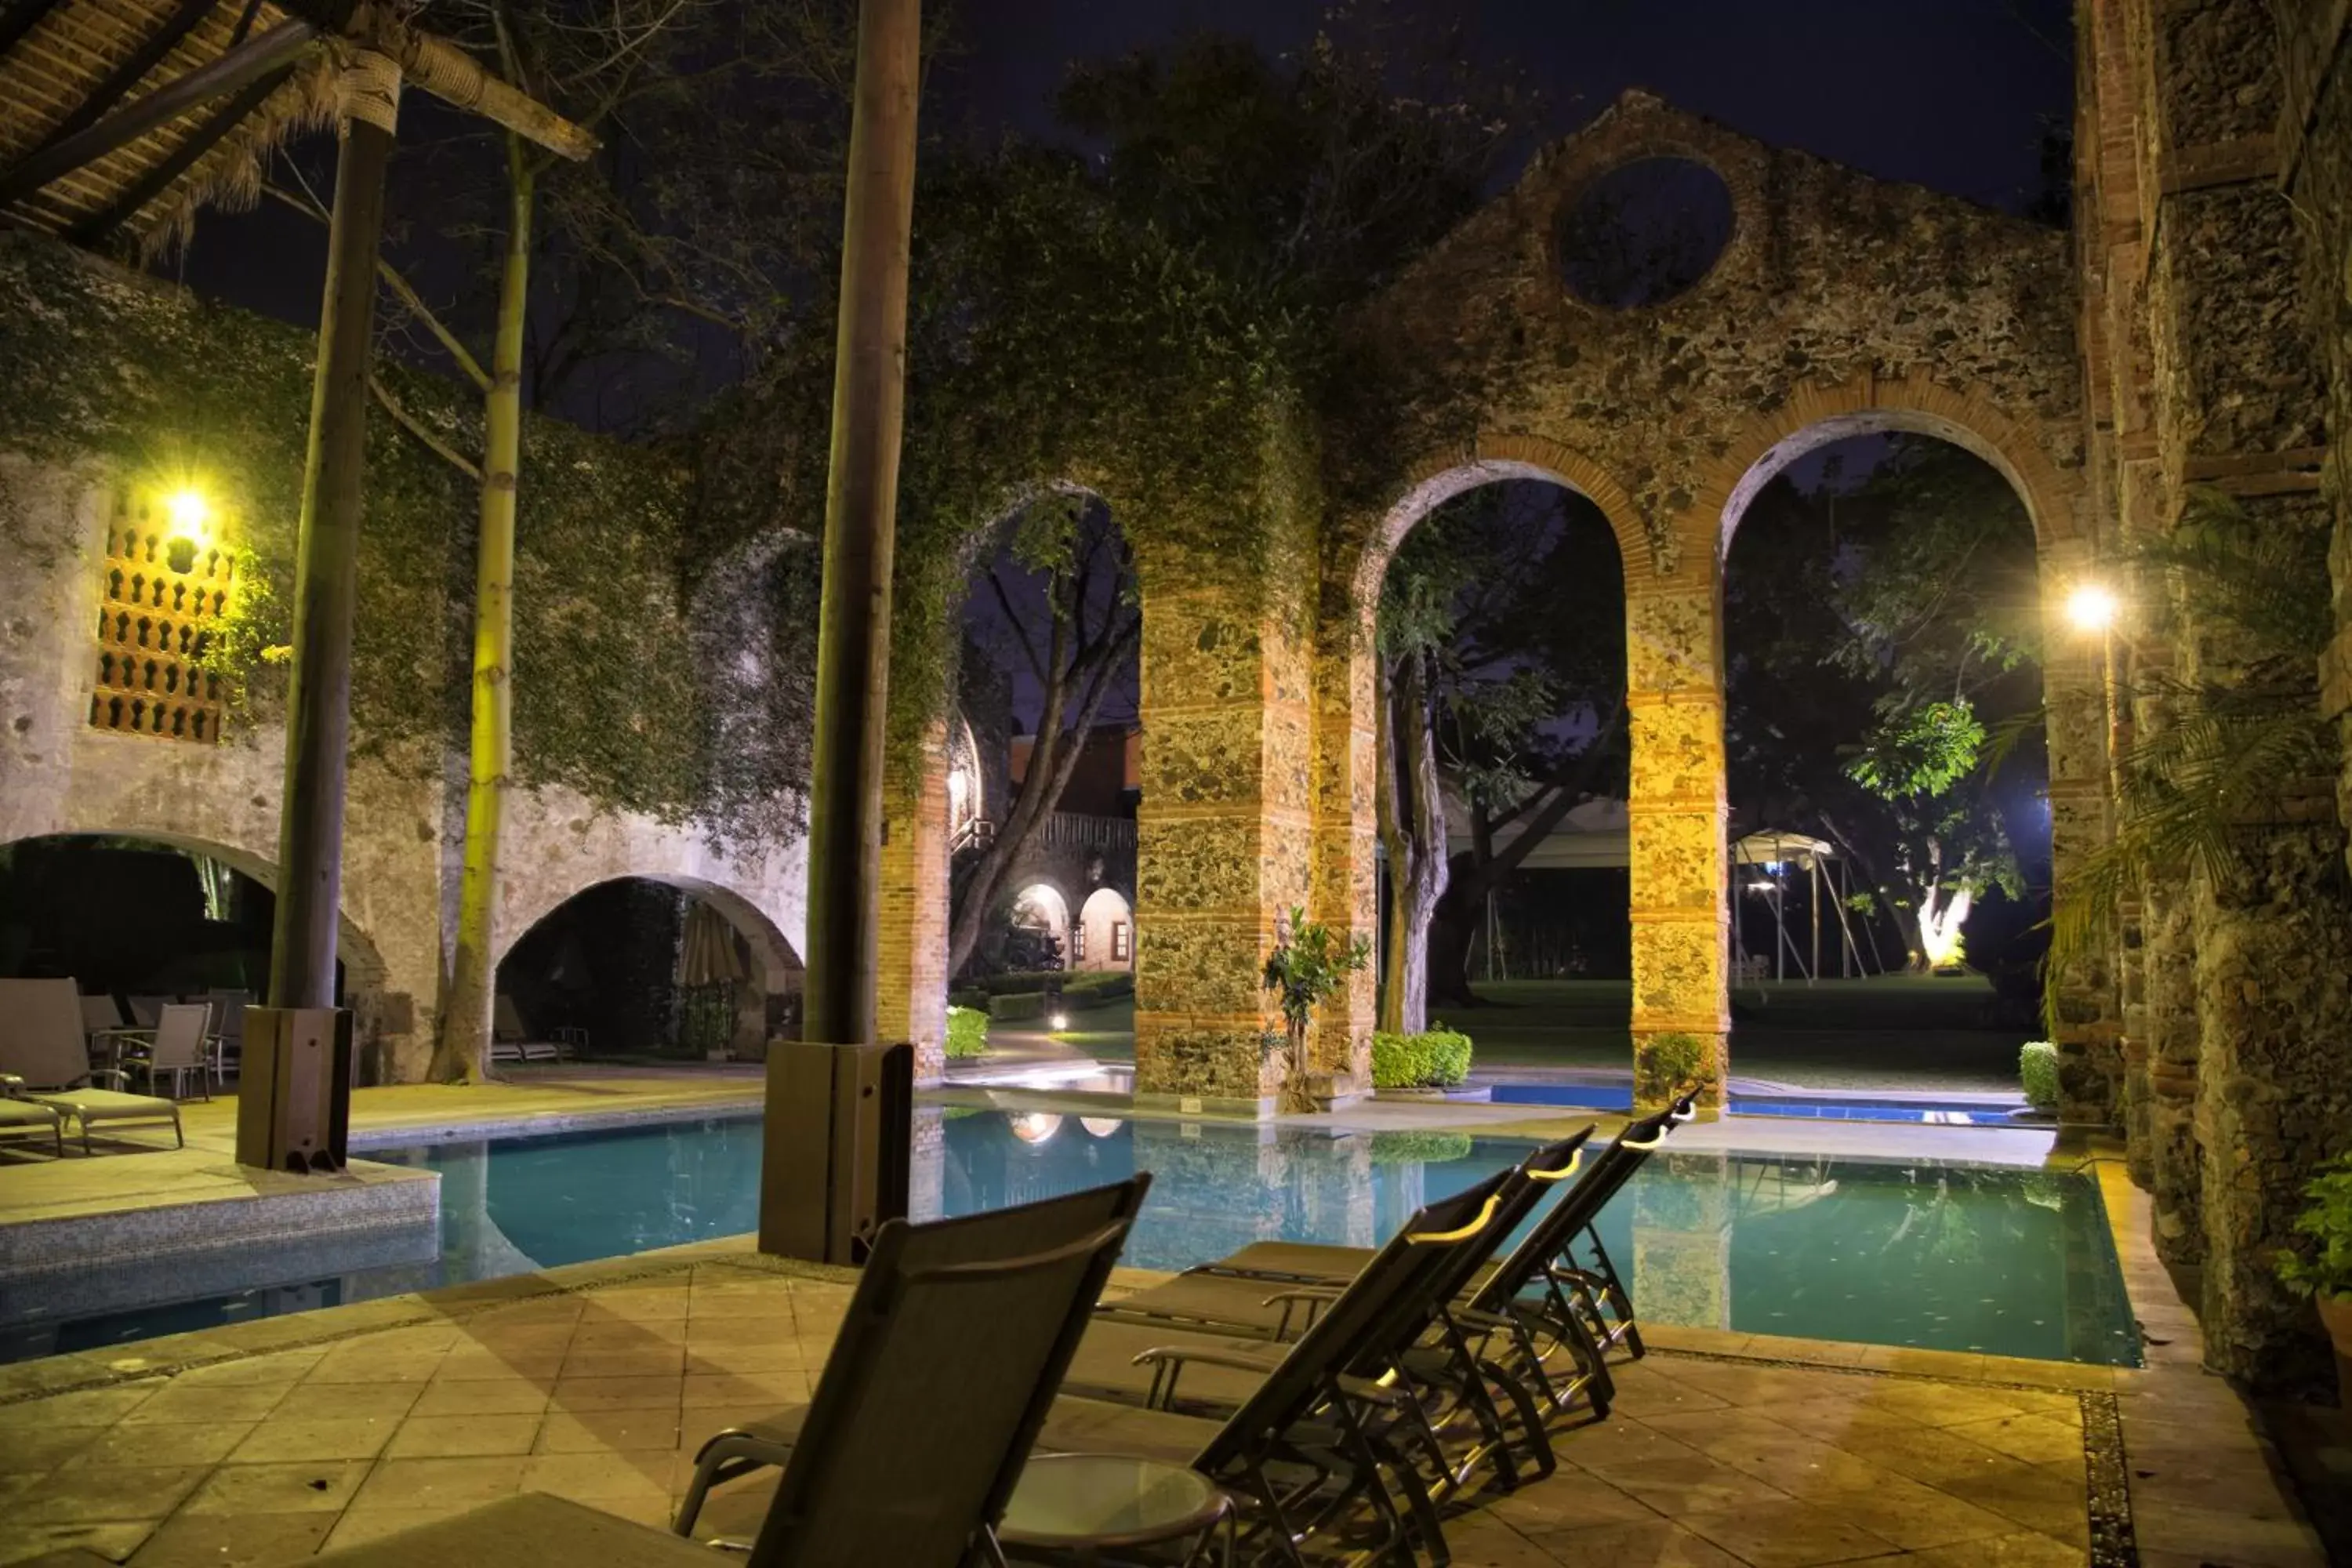 Property building, Swimming Pool in Fiesta Americana Hacienda San Antonio El Puente Cuernavaca